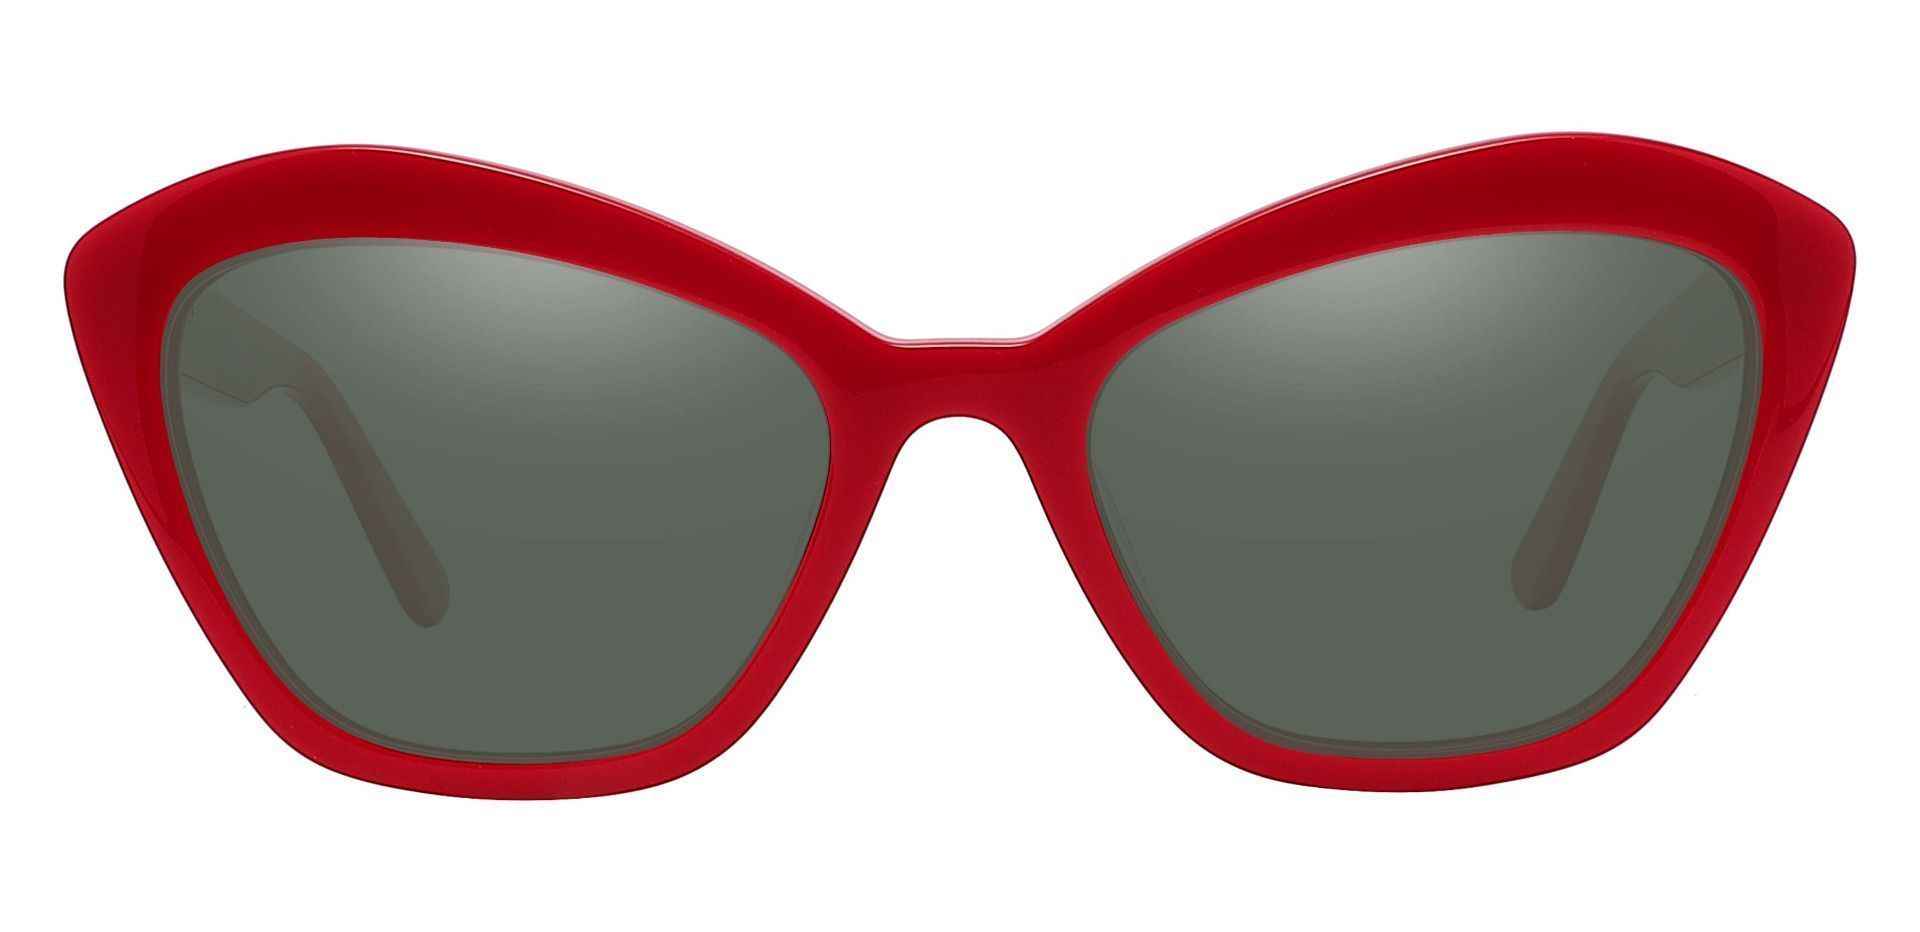 Geneva Cat Eye Progressive Sunglasses - White Frame With Gray Lenses ...